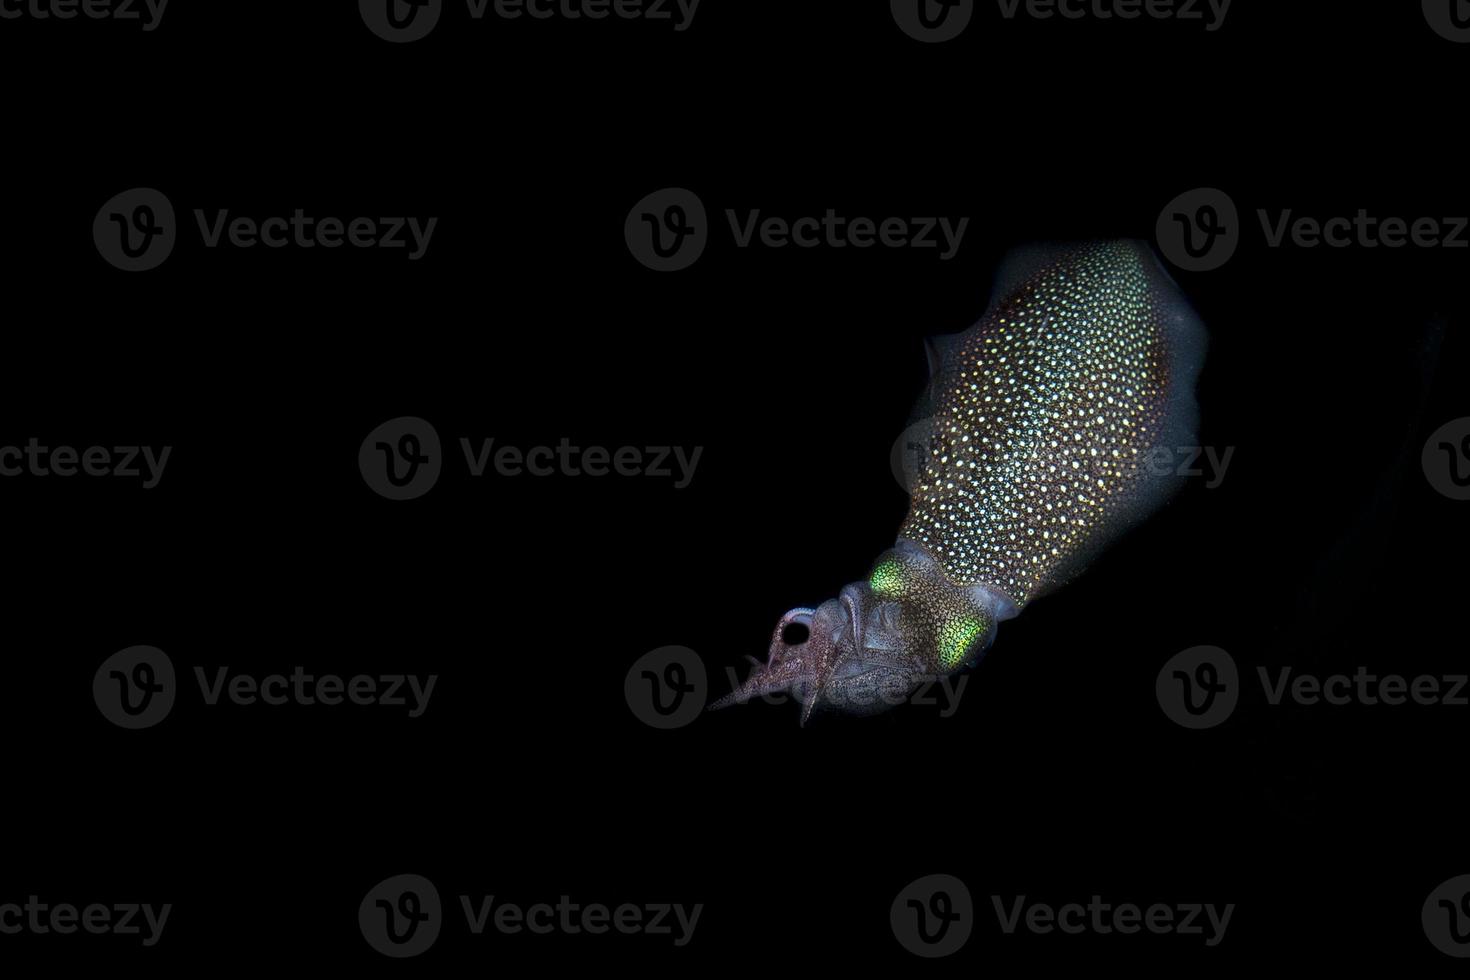 leven inktvis inktvis onderwater- Bij nacht terwijl wezen gevist foto